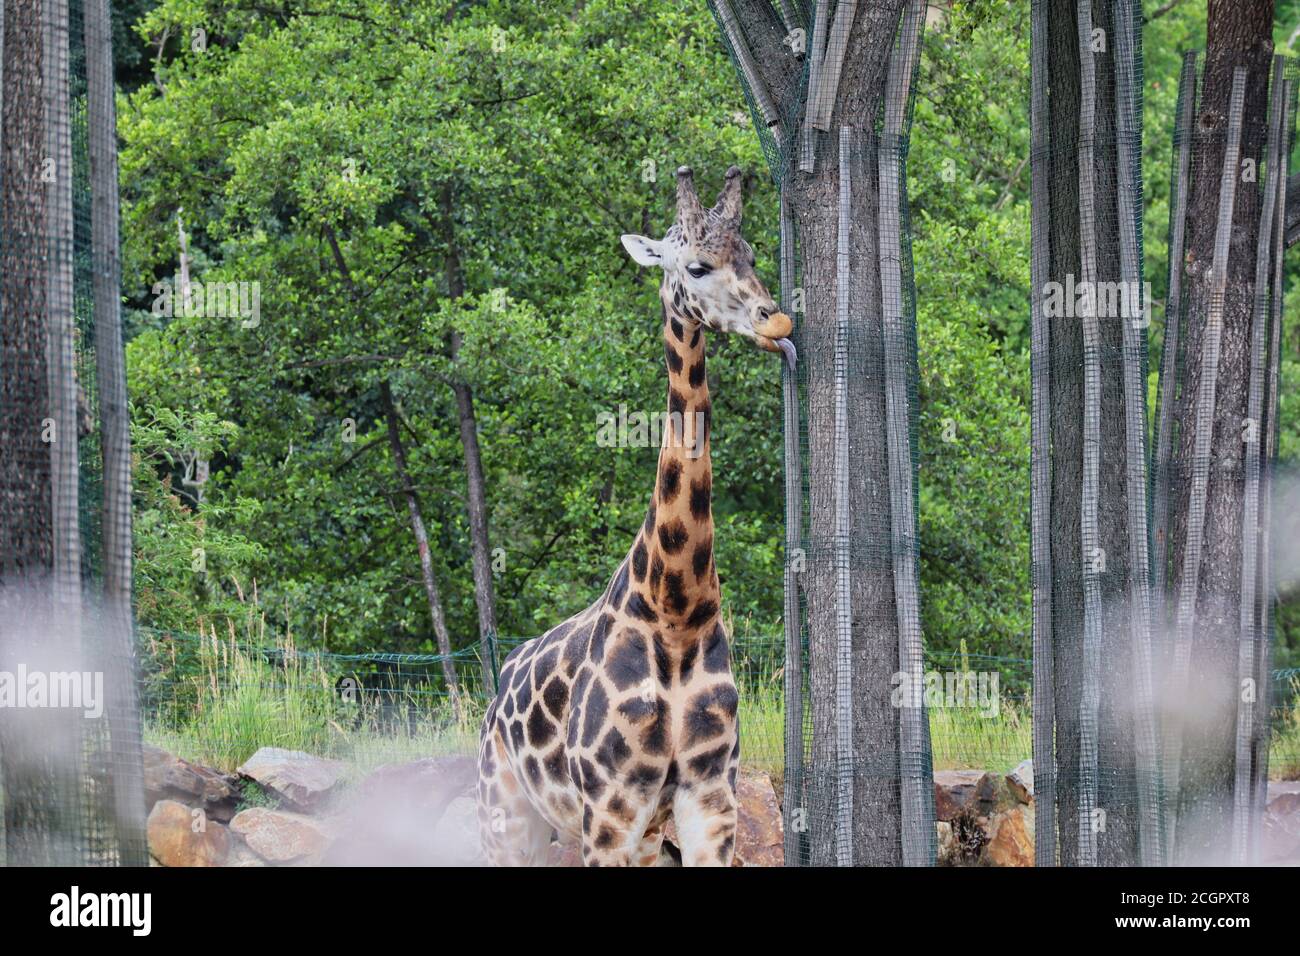 Giraffe di Rothschild (Giraffa Camelopardalis rothschildi) con lingua fuori nello zoo ceco di Pilsen. Carino giraffa africana in giardino zoologico. Foto Stock